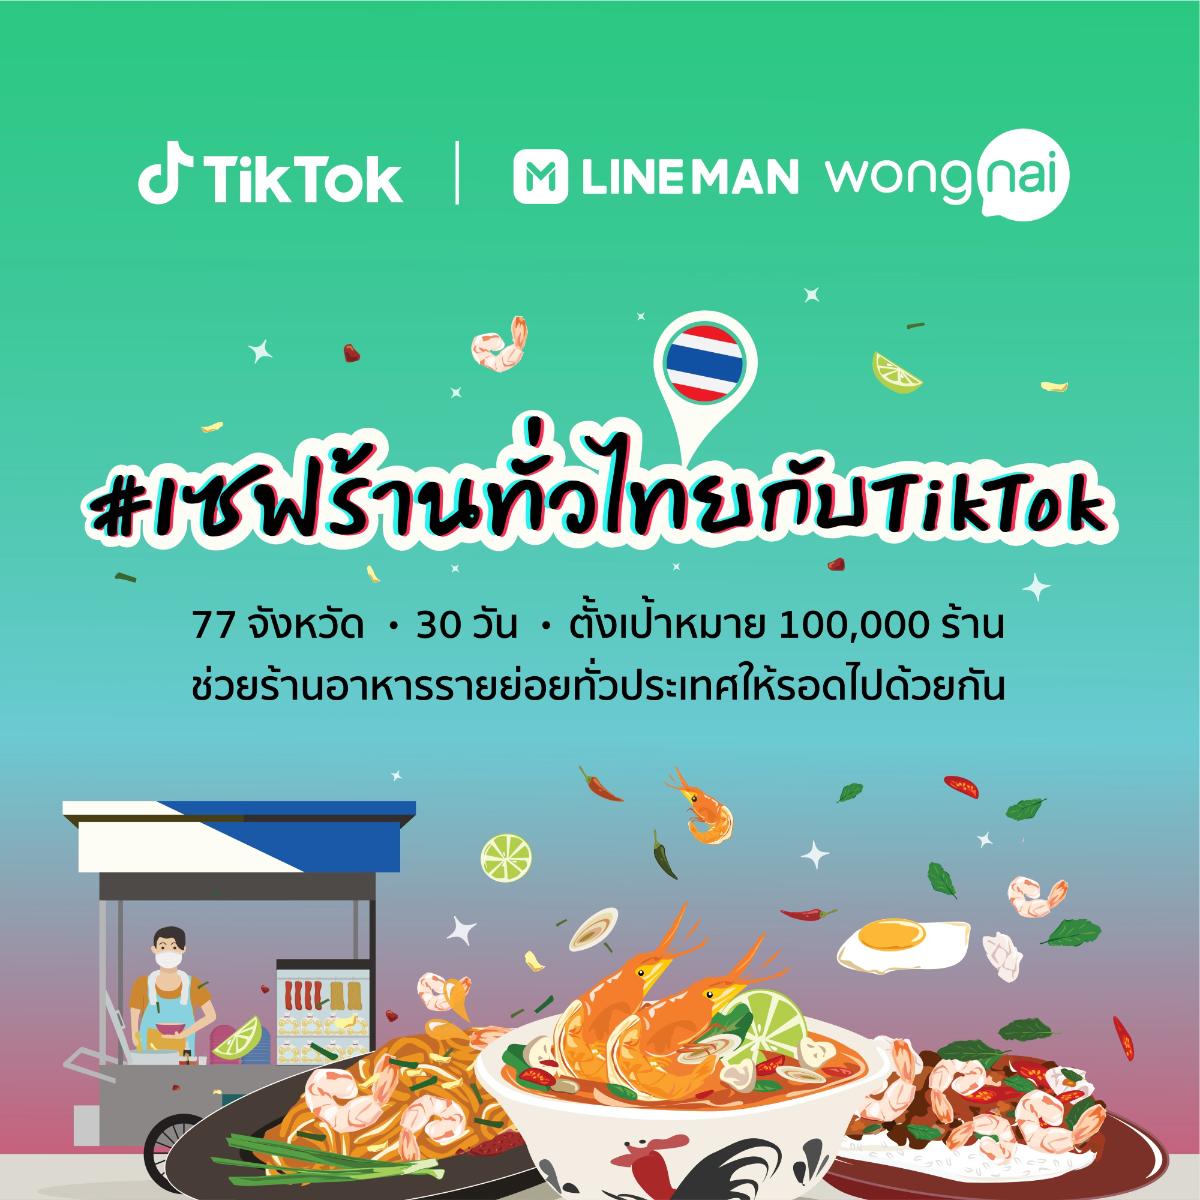 TikTok ผนึกกำลัง LINE MAN Wongnai ผุดโปรเจกต์ #เซฟร้านทั่วไทยกับ TikTok ชวนคนไทย บอกต่อเมนูเด็ด